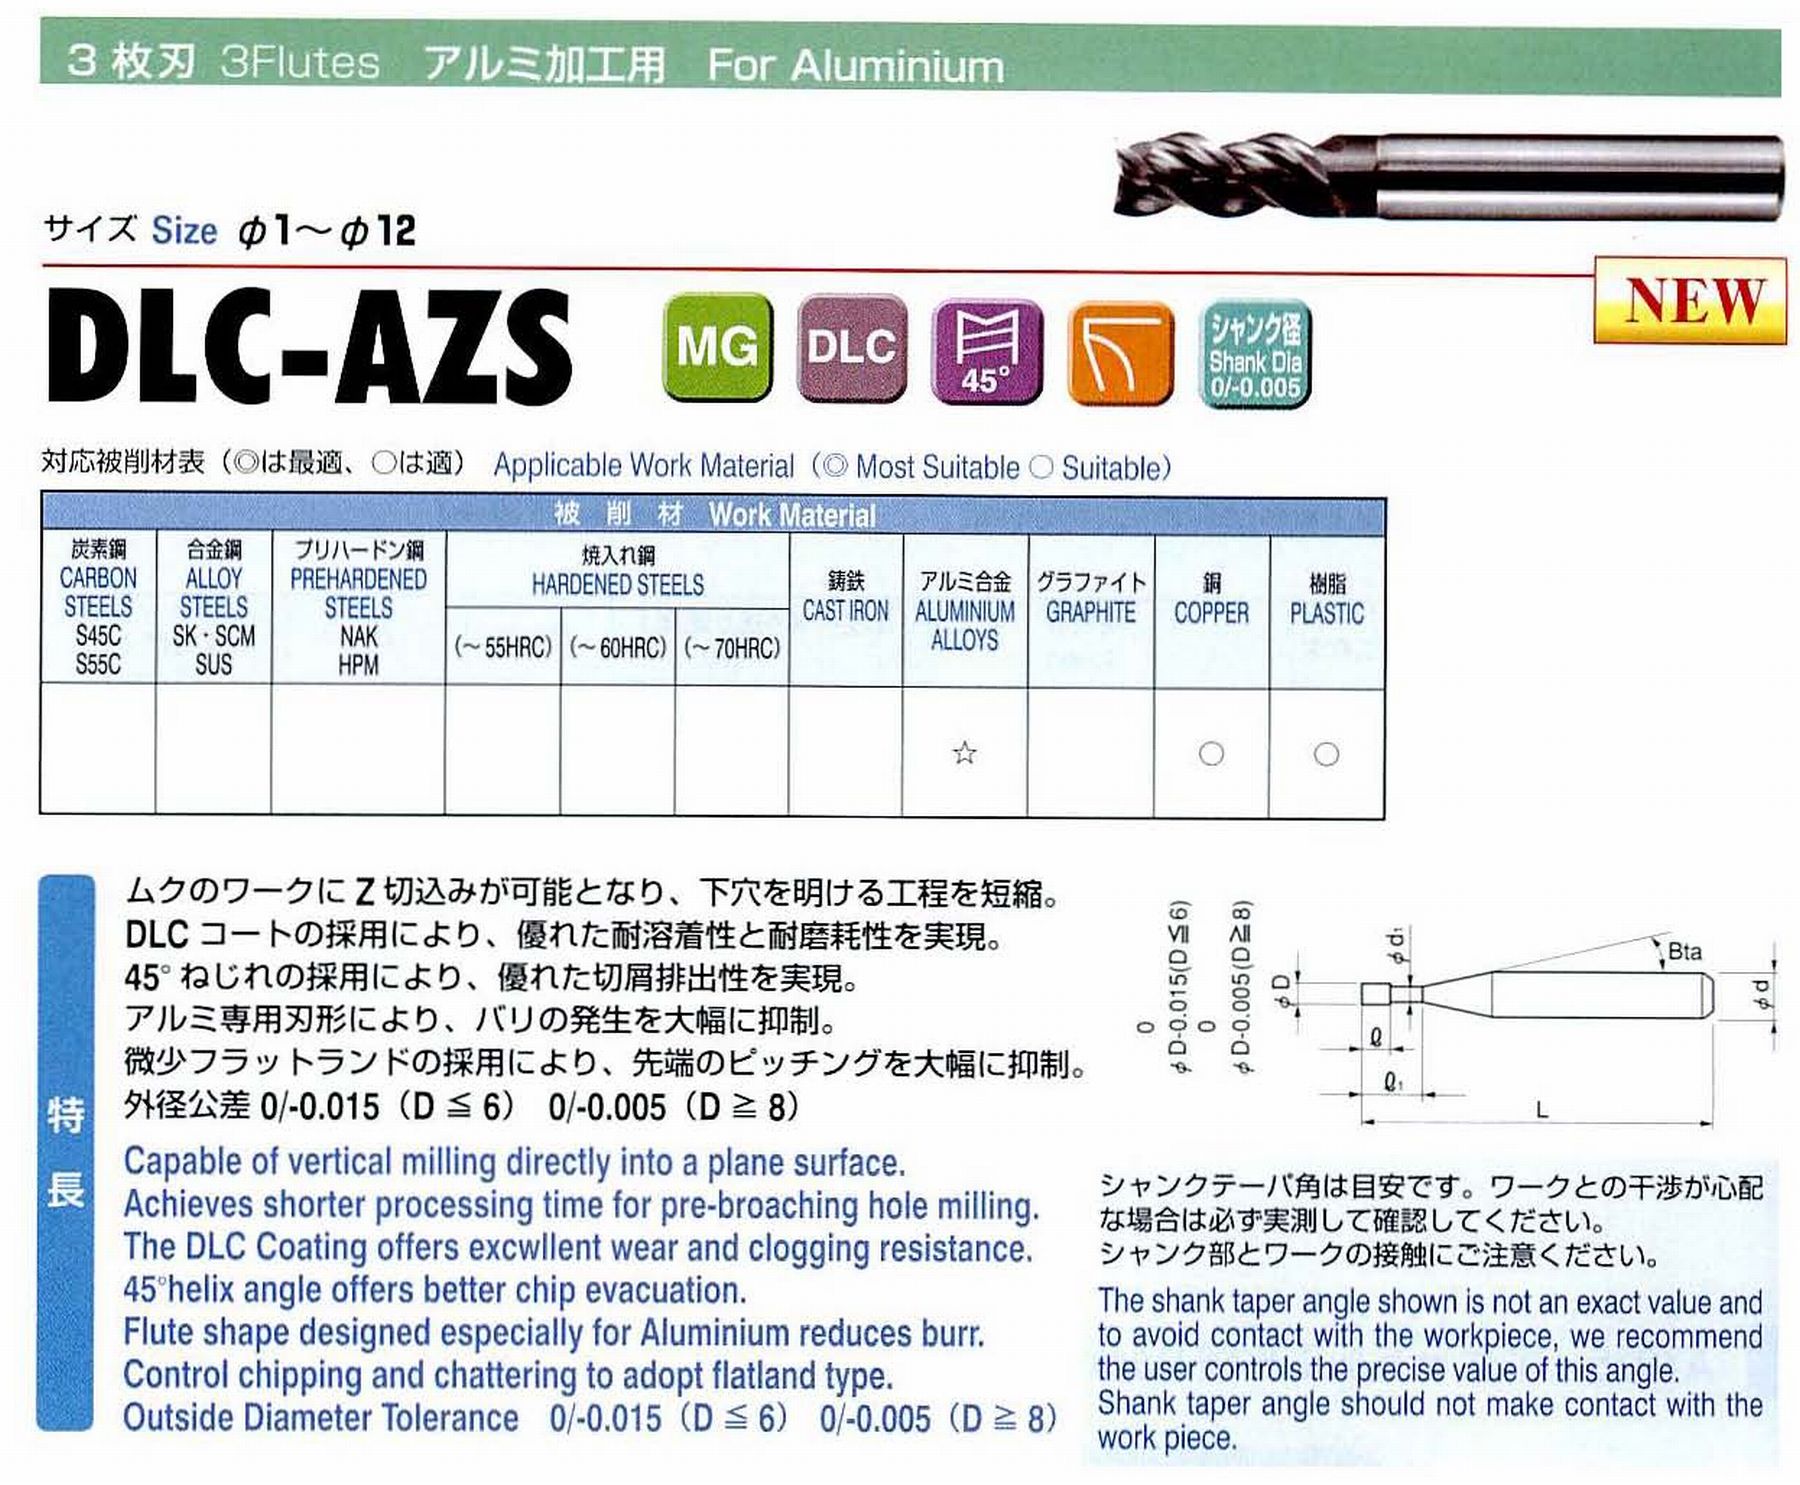 ユニオンツール 3枚刃 DLC-AZS3120-360 外径12 有効長36 刃長24 首径11.82 シャンクテーパ角- 全長110 シャンク径12